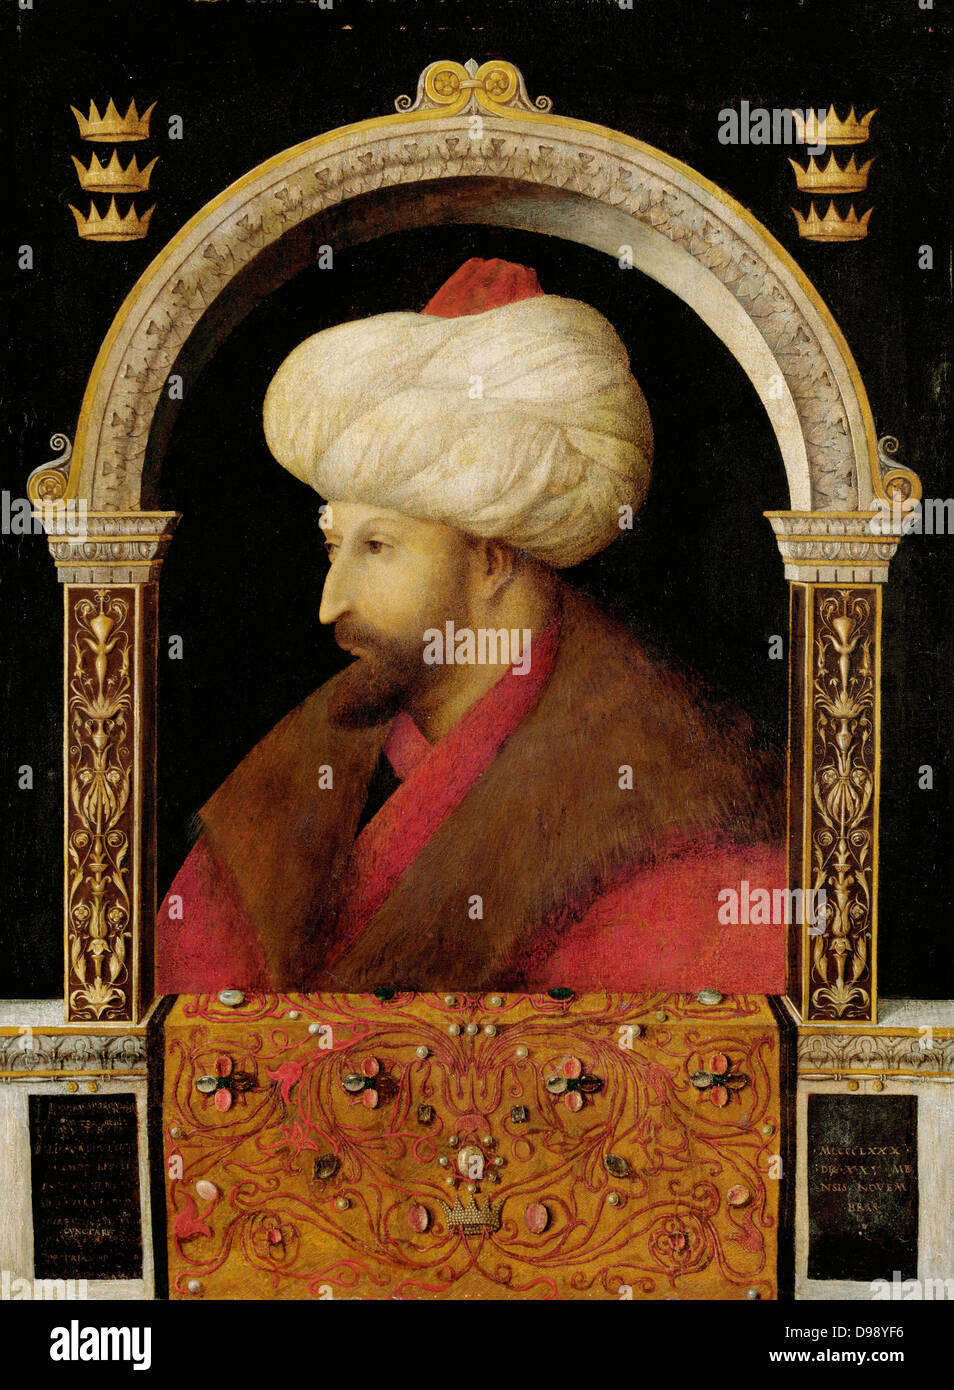 Mehmet II (Marzo 30, 1432 - 3 Maggio 1481) (noto anche come el-F?ti? 'Il conquistatore' sultano dell'Impero Ottomano (Rûm fino alla conquista) per un breve periodo di tempo dal 1444 al settembre 1446, e più tardi dal febbraio 1451 al 1481. Ritratto di Mehmet II da artista veneziano Gentile Bellini Foto Stock